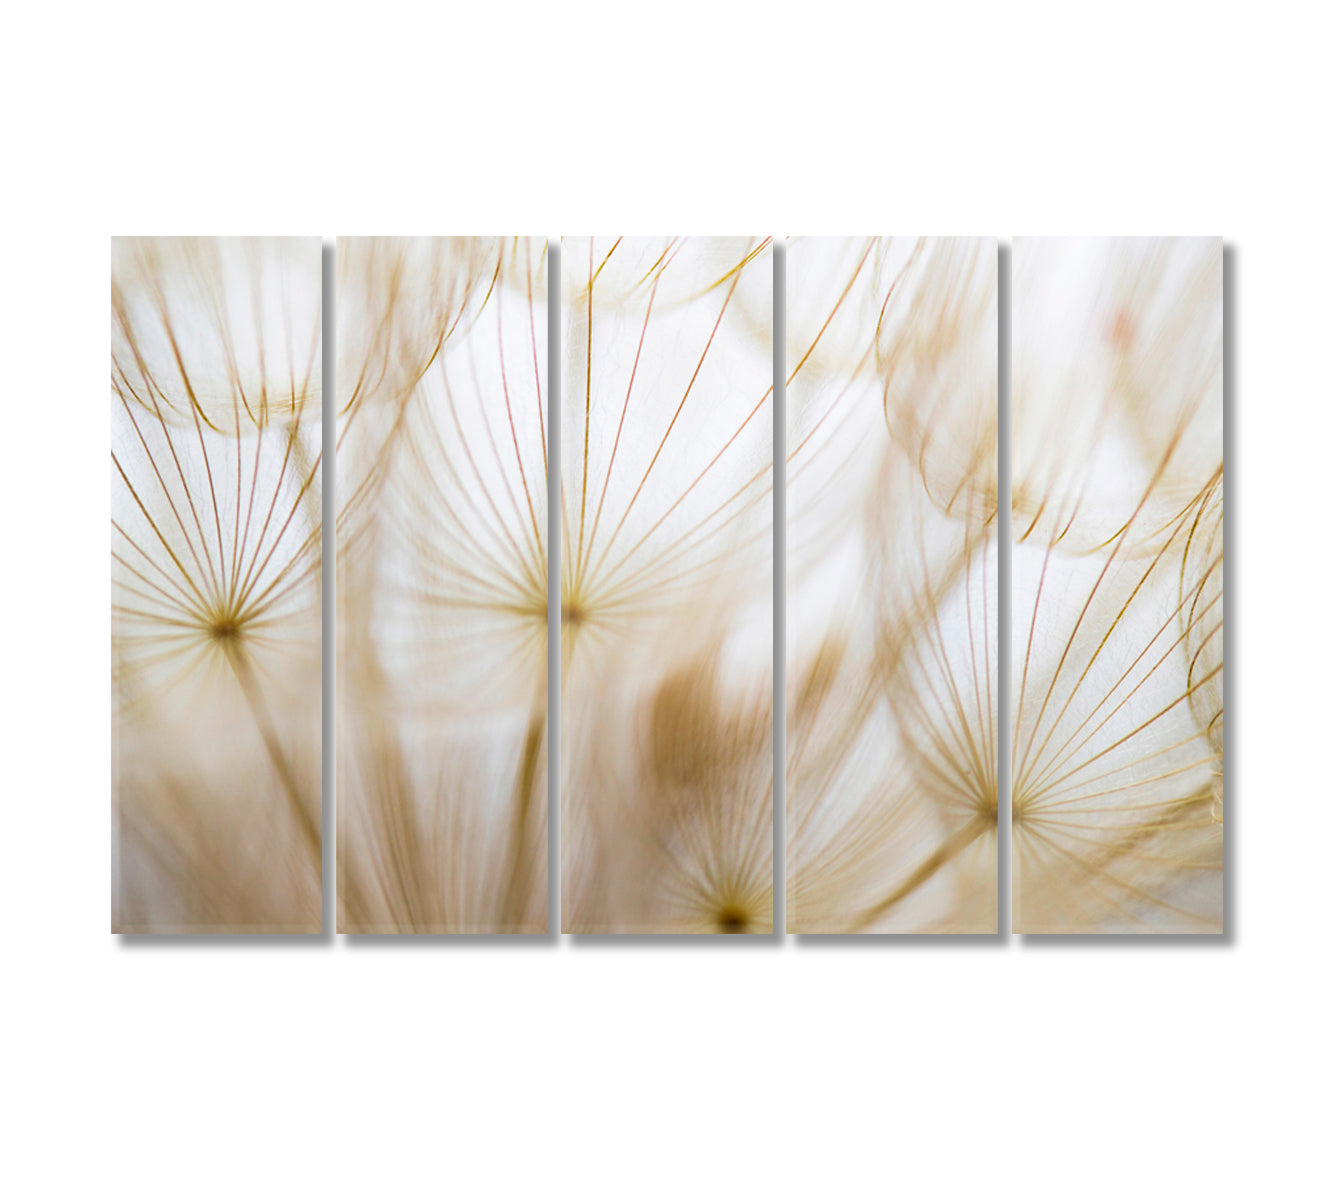 Beige Dandelion Canvas Art Decor-Canvas Print-CetArt-5 Panels-36x24 inches-CetArt